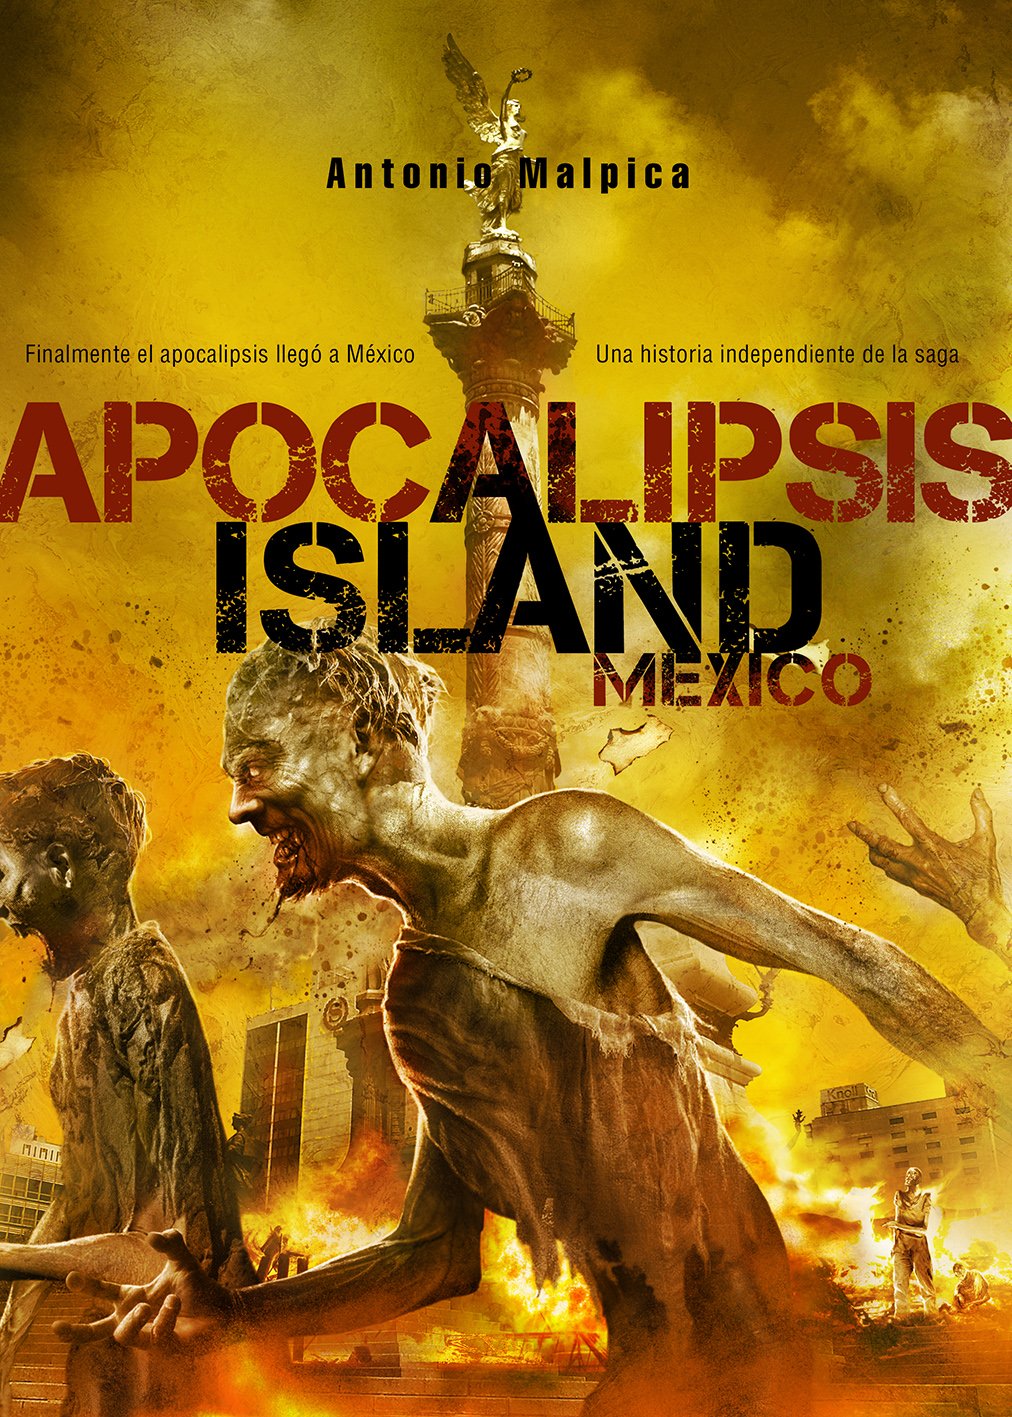 RESEÑA: Apocalipsis Island México, de Antonio Malpica